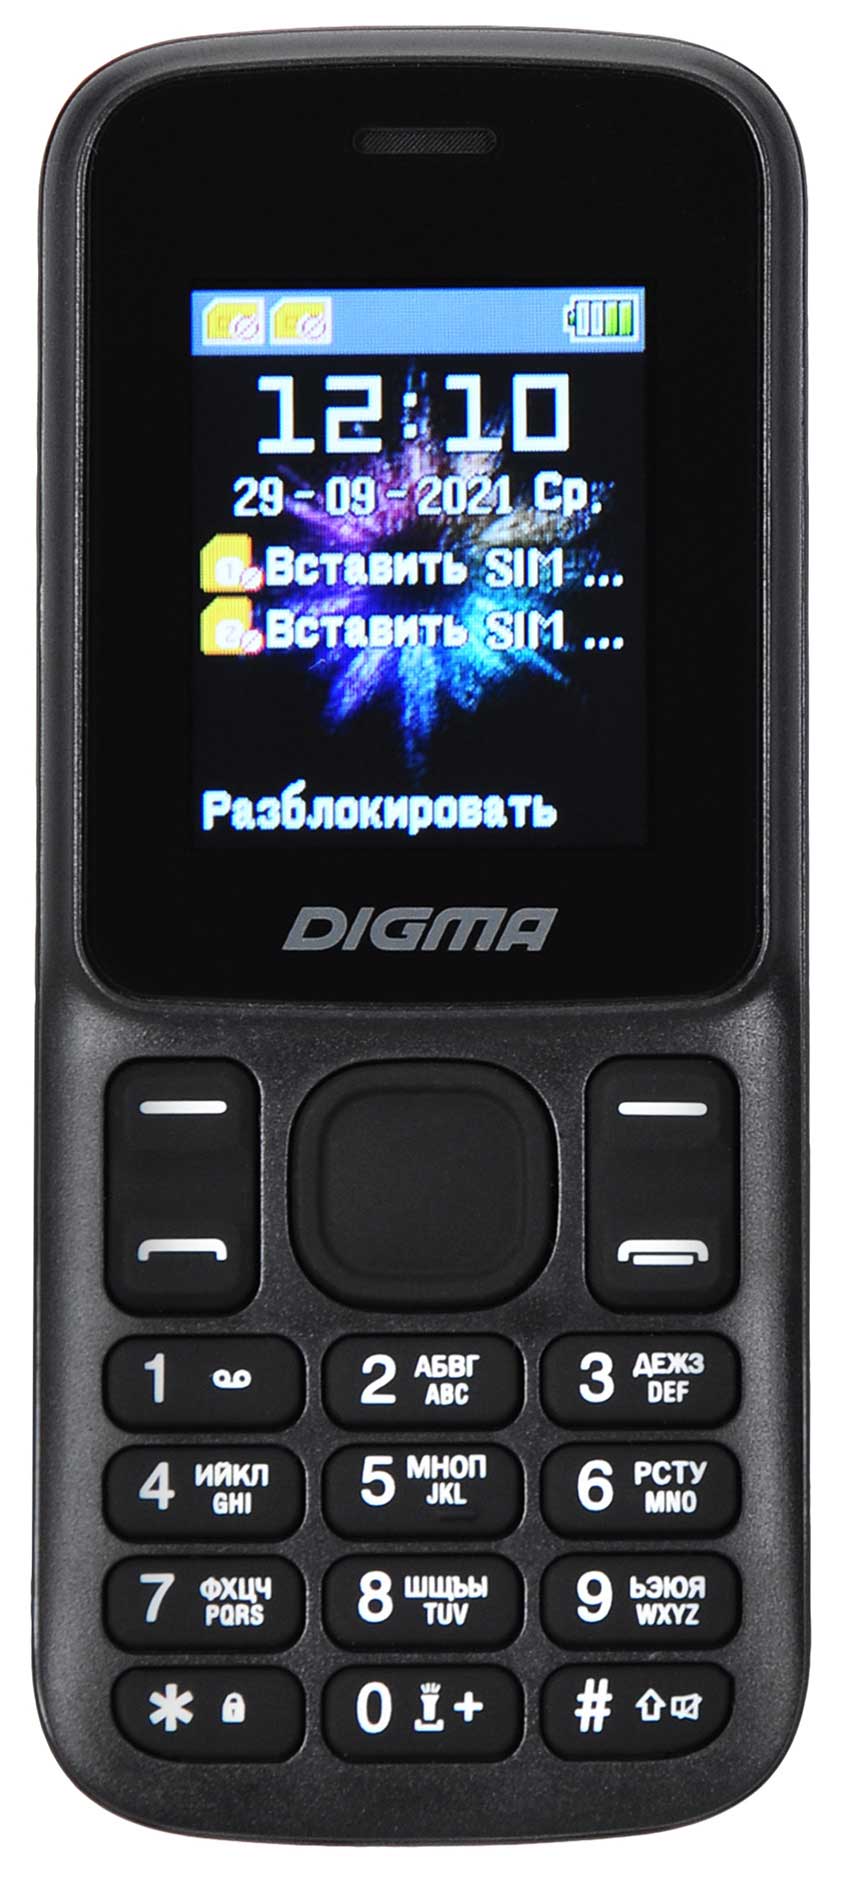 мобильный телефон digma b240 linx 32mb синий моноблок 2sim 2 44 240x320 0 08mpix gsm900 1800 fm microsd Мобильный телефон Digma A172 Linx 32Mb черный